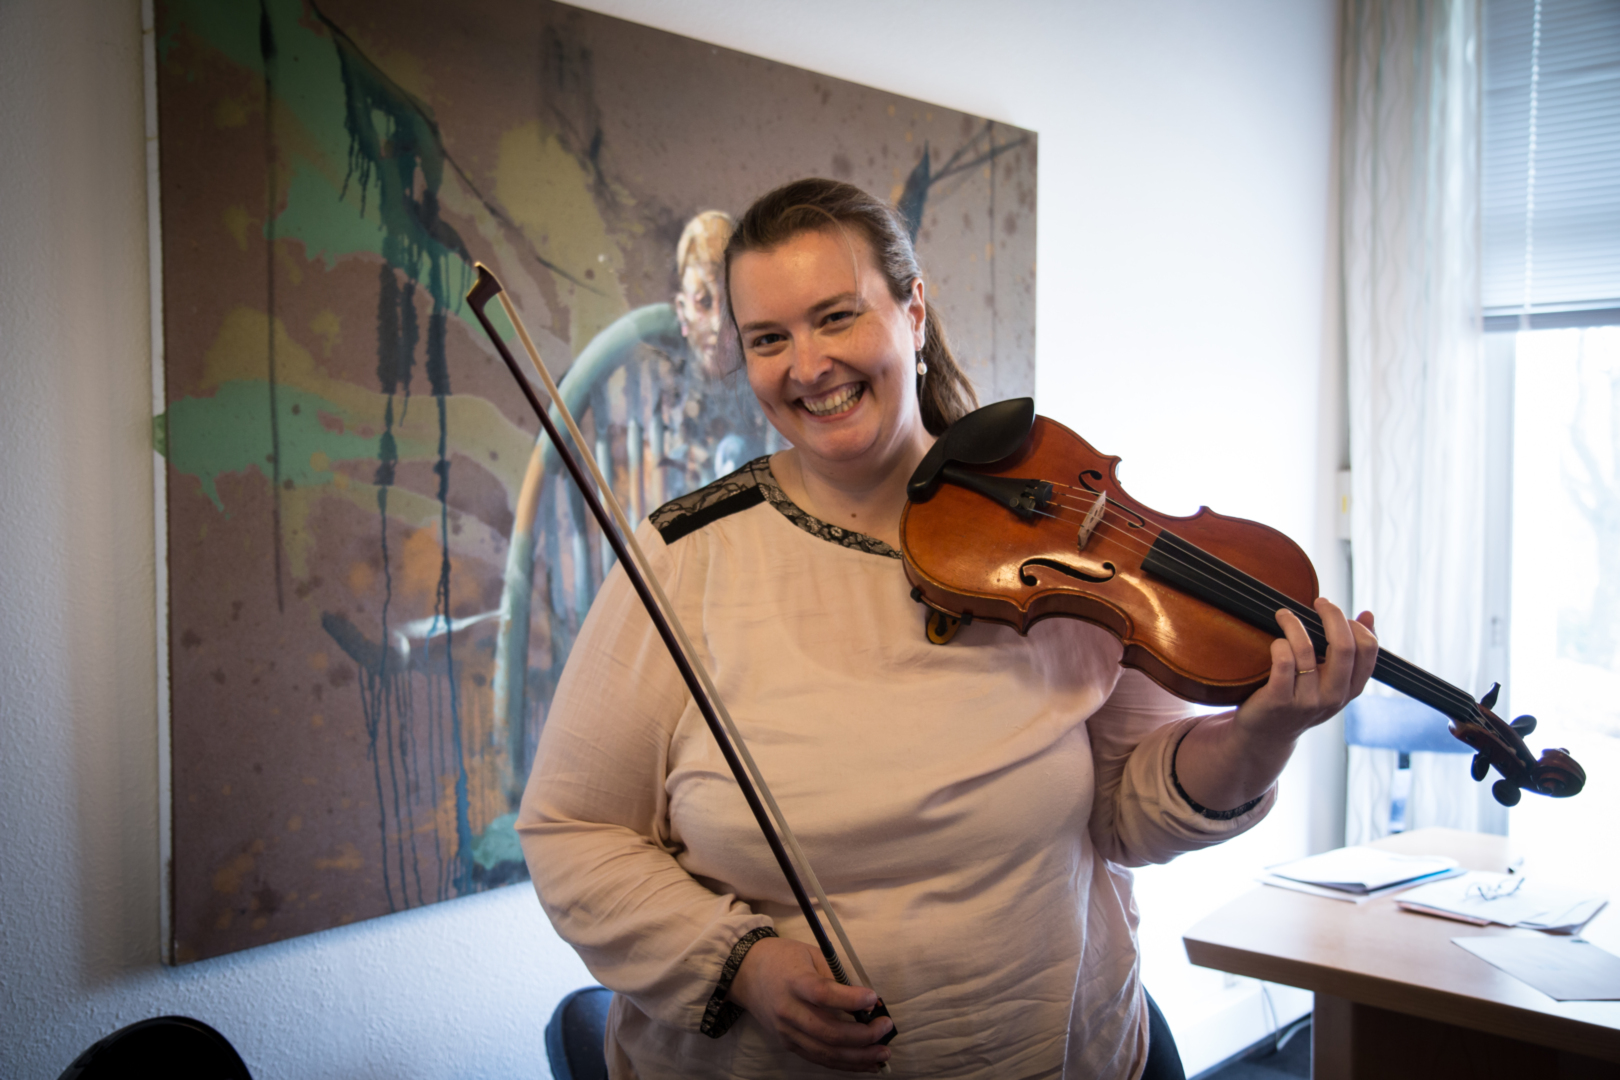 Kan spille litt: Stine Rem Aarønes trodde hun måtte oppgi yrket som musiker, men har klart å komme seg tilbake i delvis jobb igjen. 